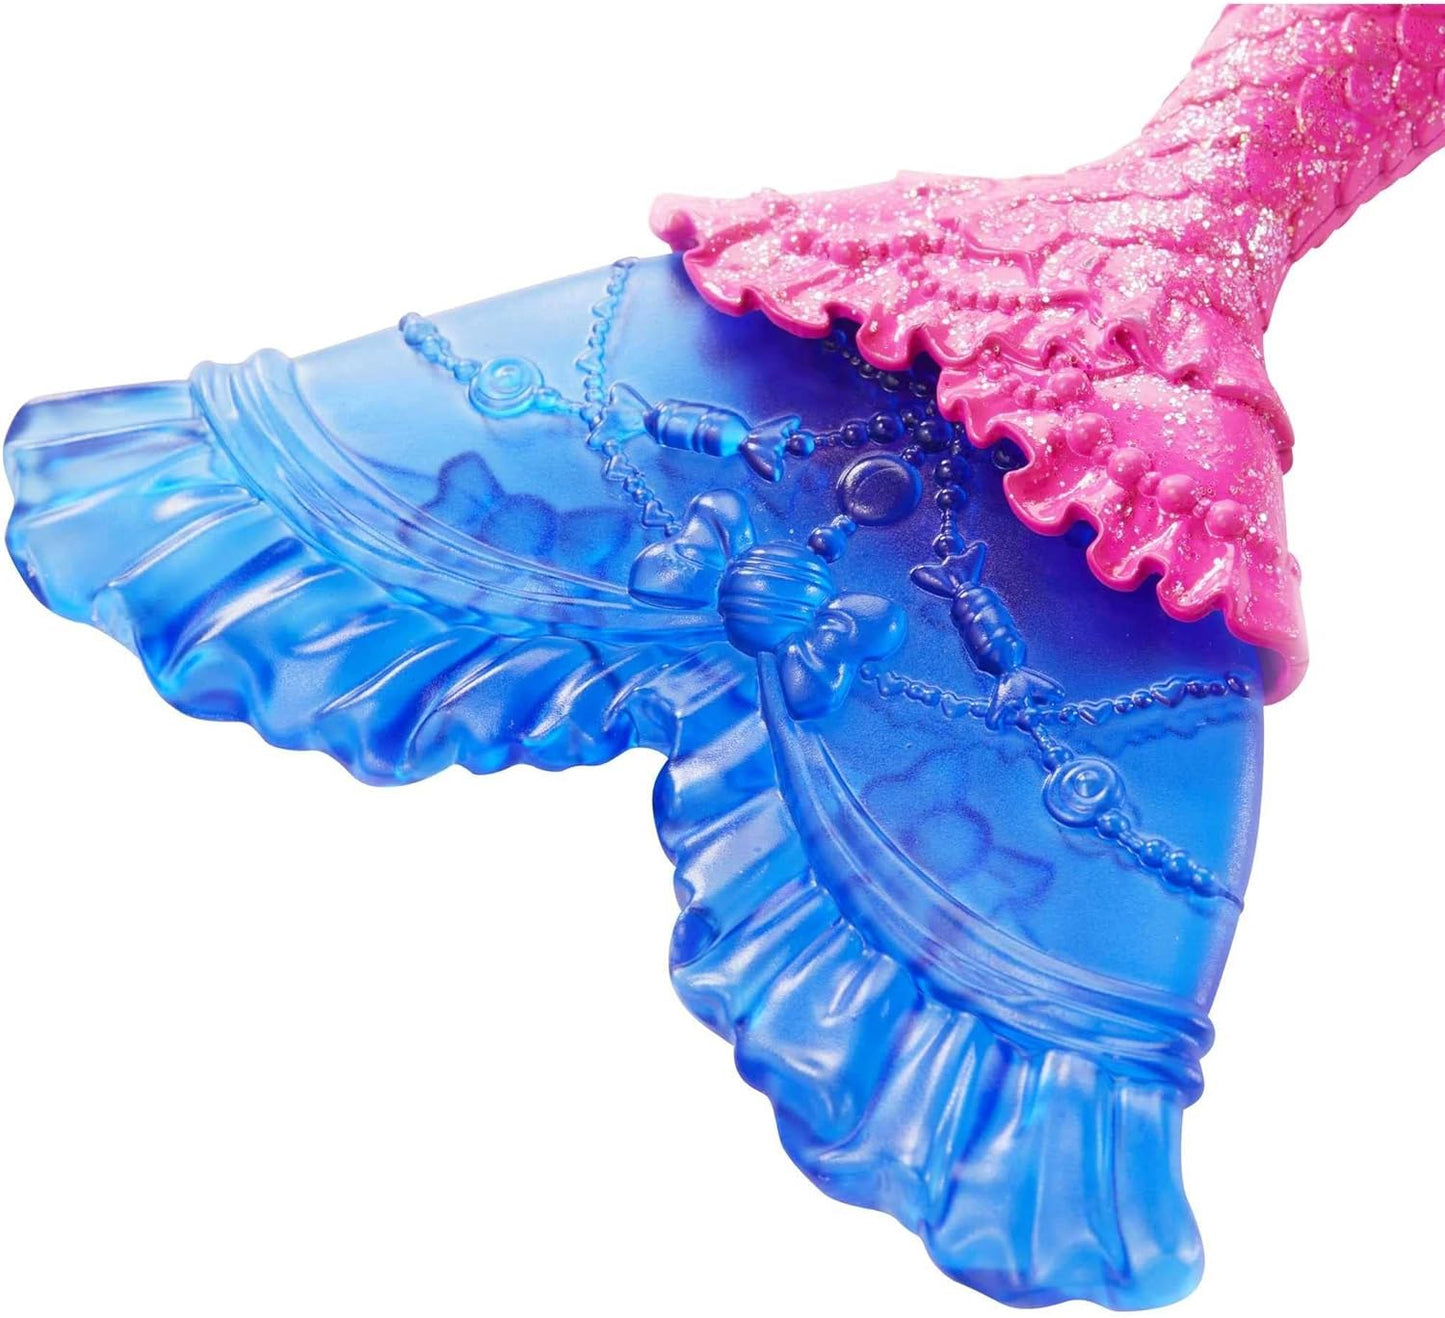 BARBIE Dreamtopia - Sirène cheveux roses et bleus